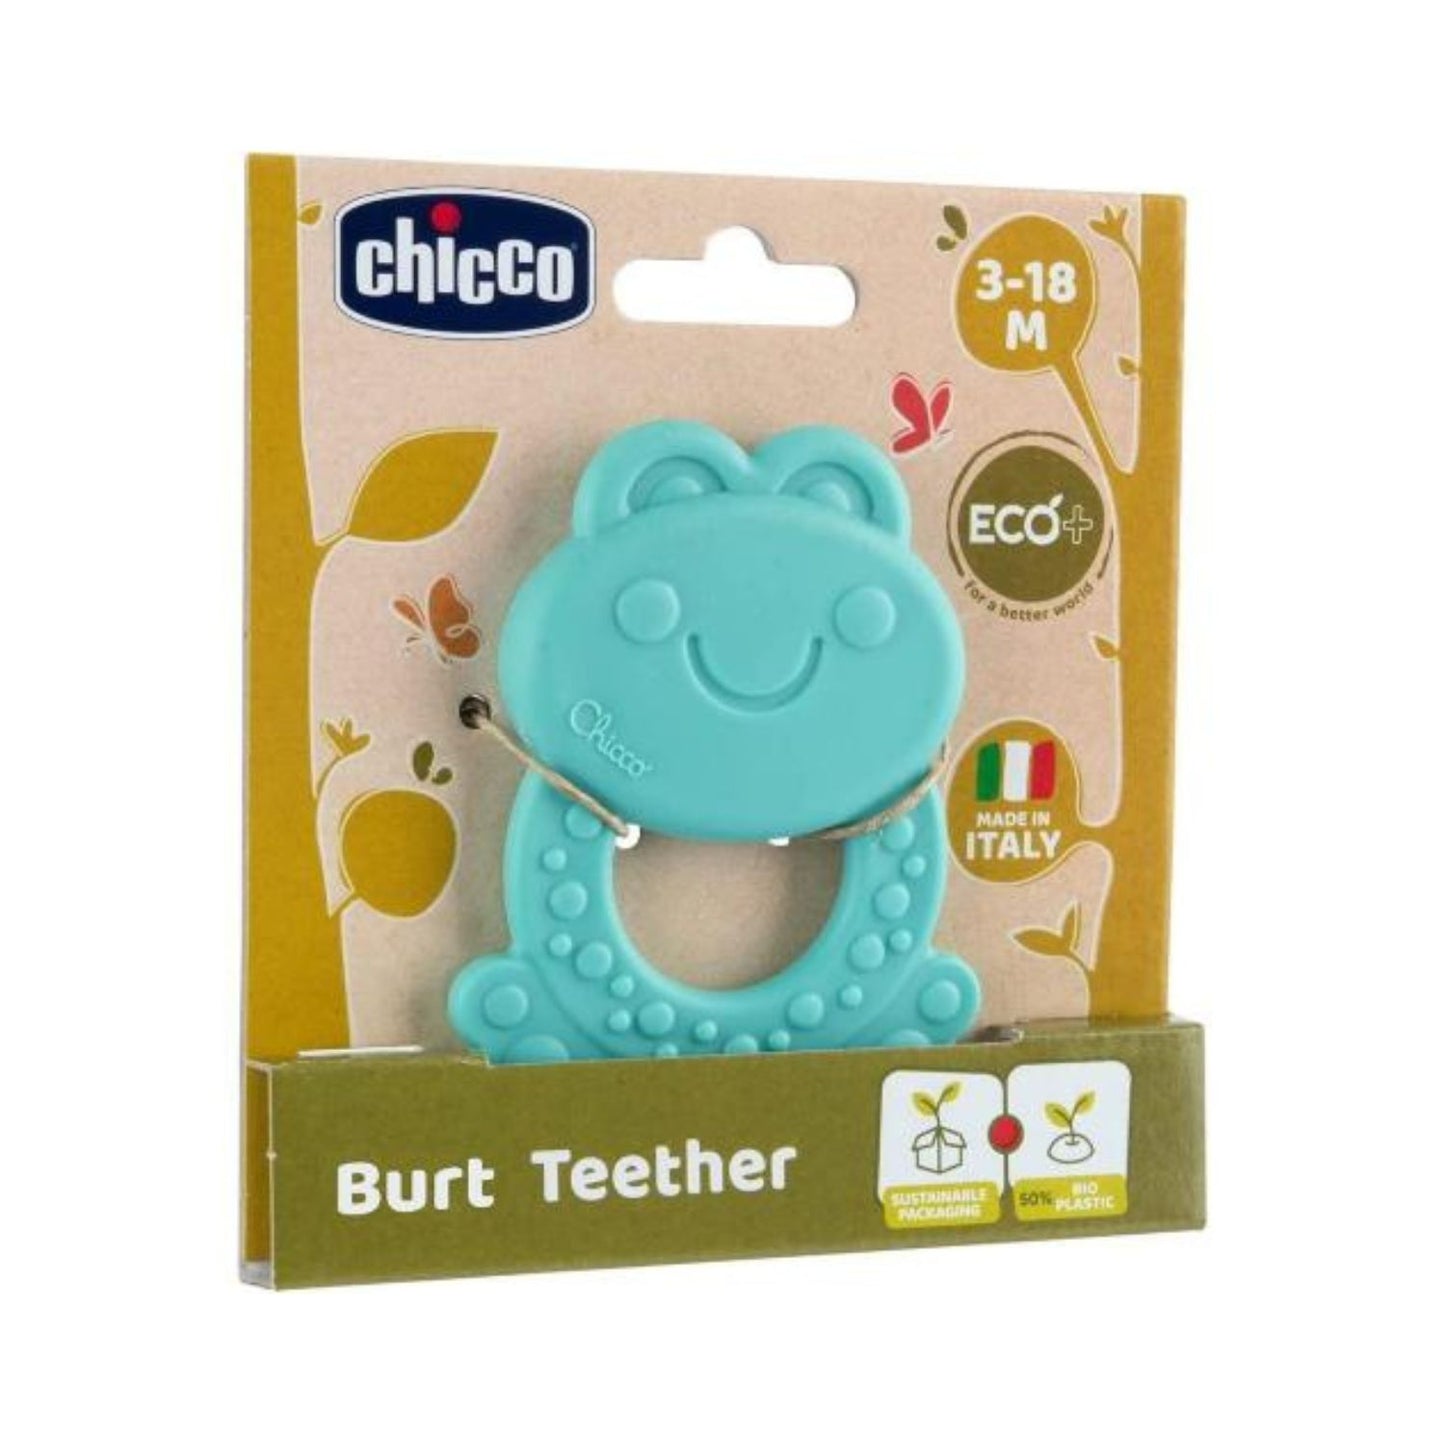 Chicco - ECO+ Frog Teether